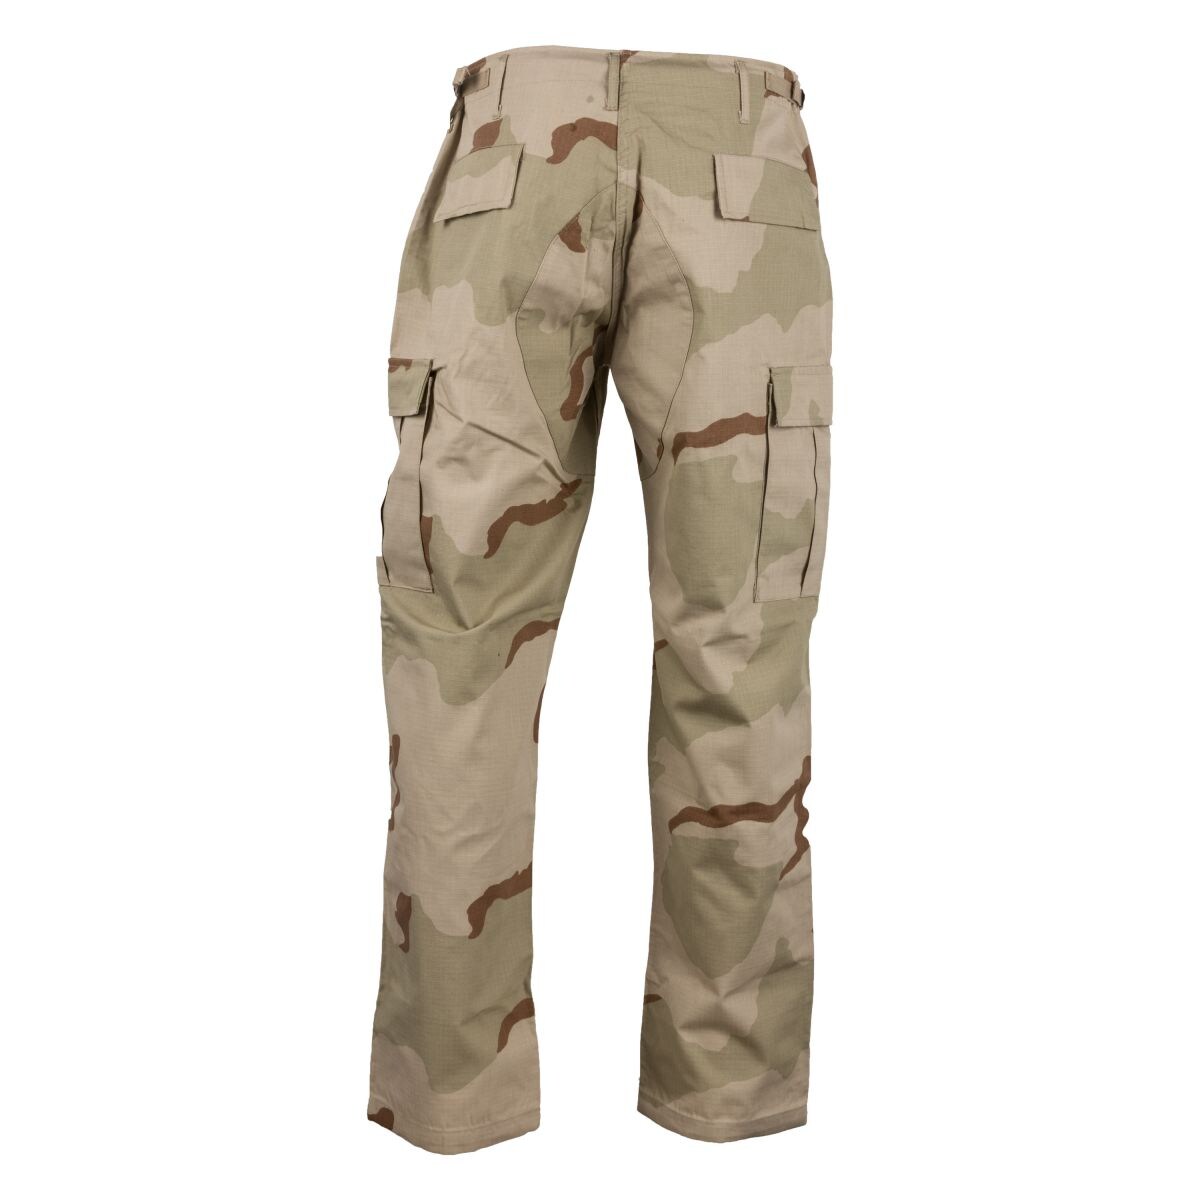 Ranger Pants desert 3-color | Ranger Pants desert 3-color | Pants ...